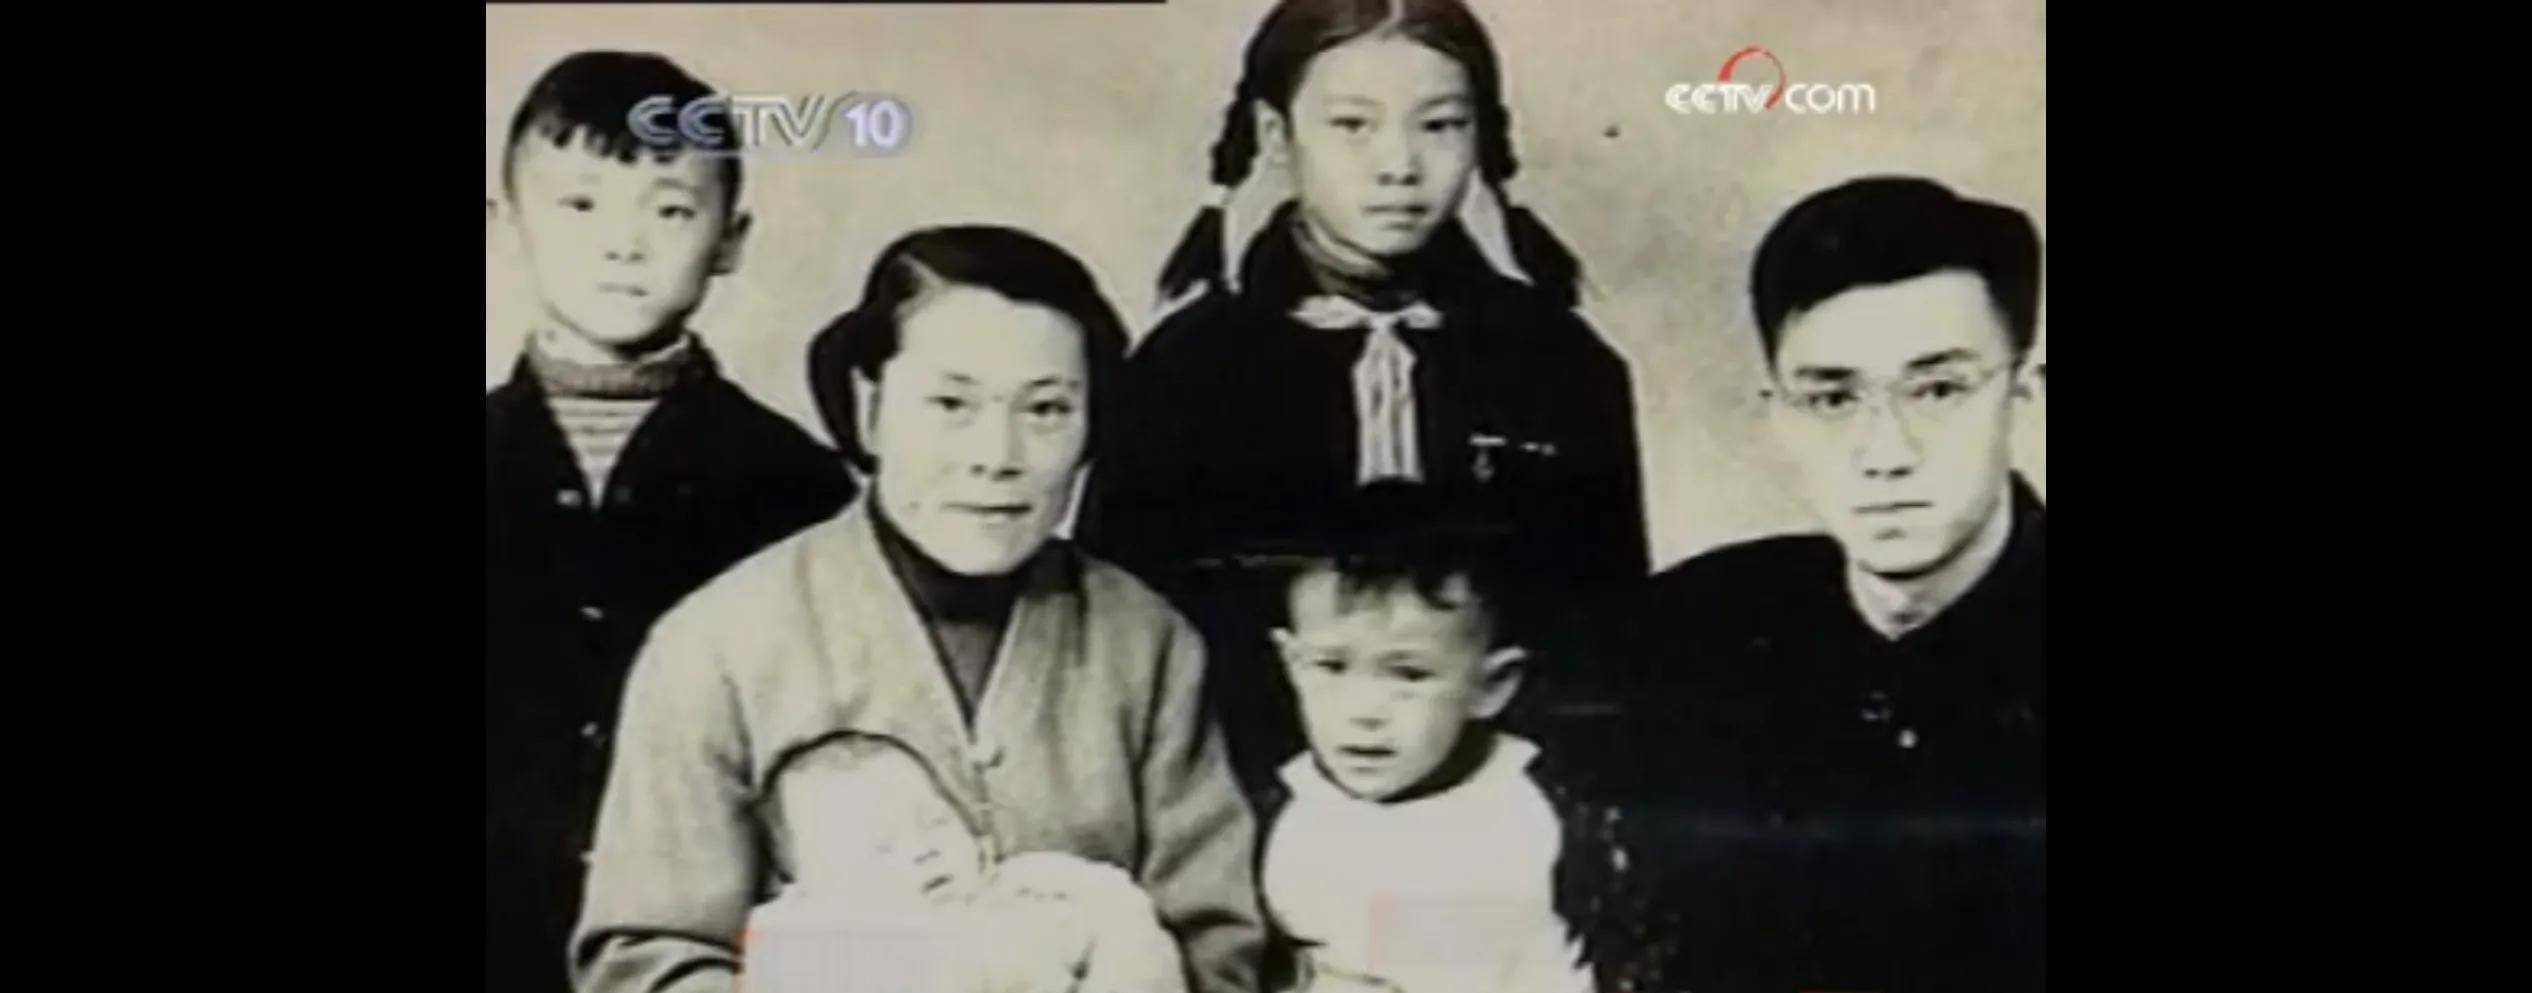 谢晋去世后,妻子徐大雯回忆:他觉得对不起两个儿子,让他们受苦